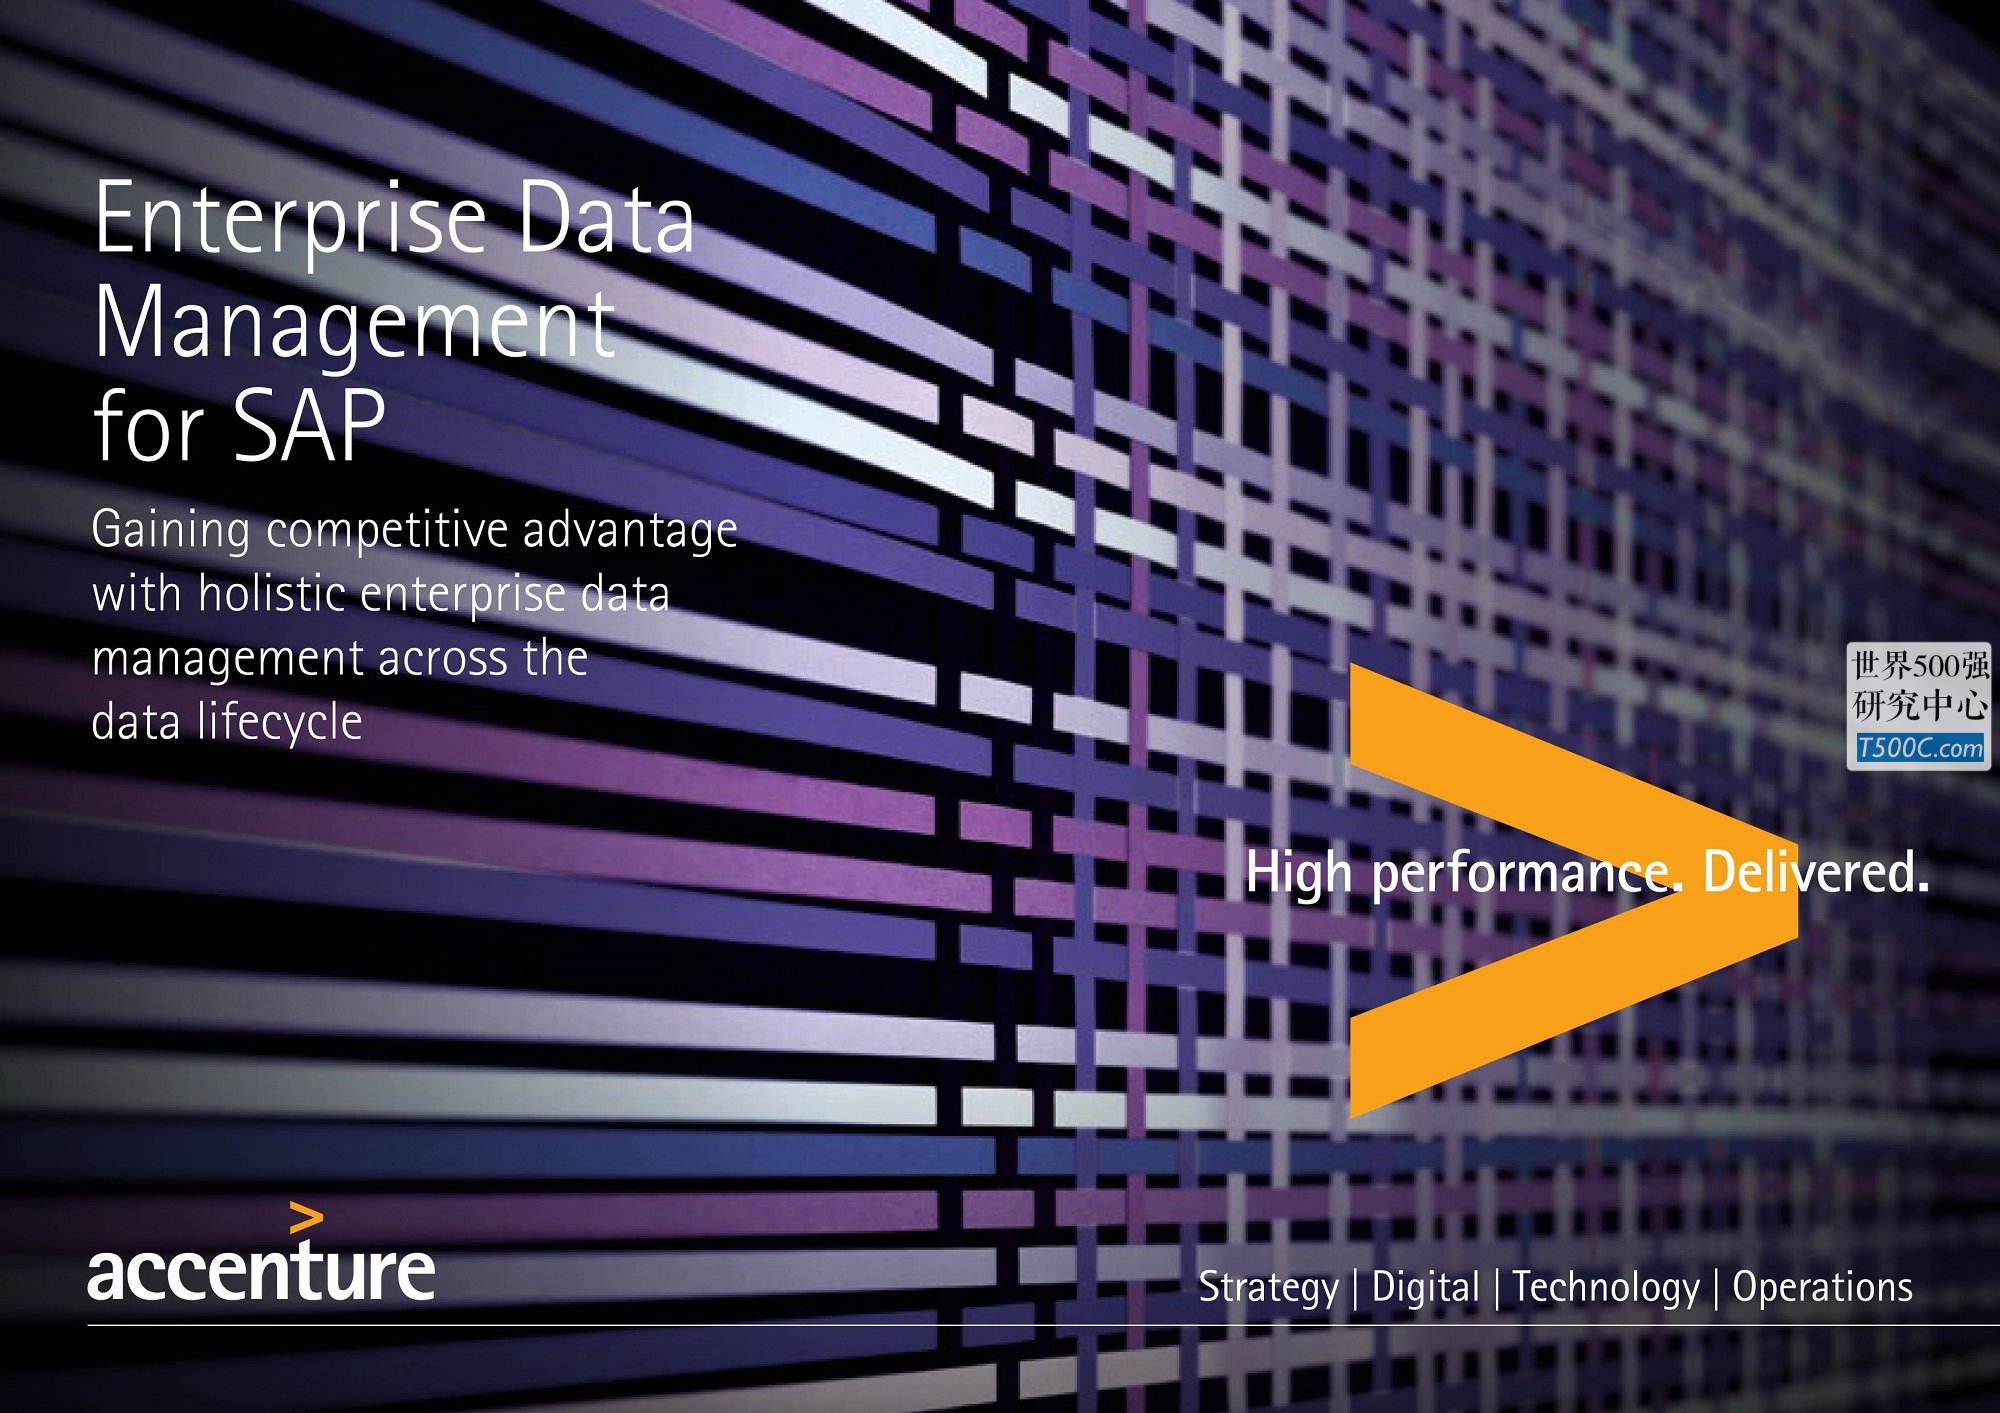 埃森哲Accenture_业务宣传册Brochure_T500C.com_Enterprise-Data-Management.pdf